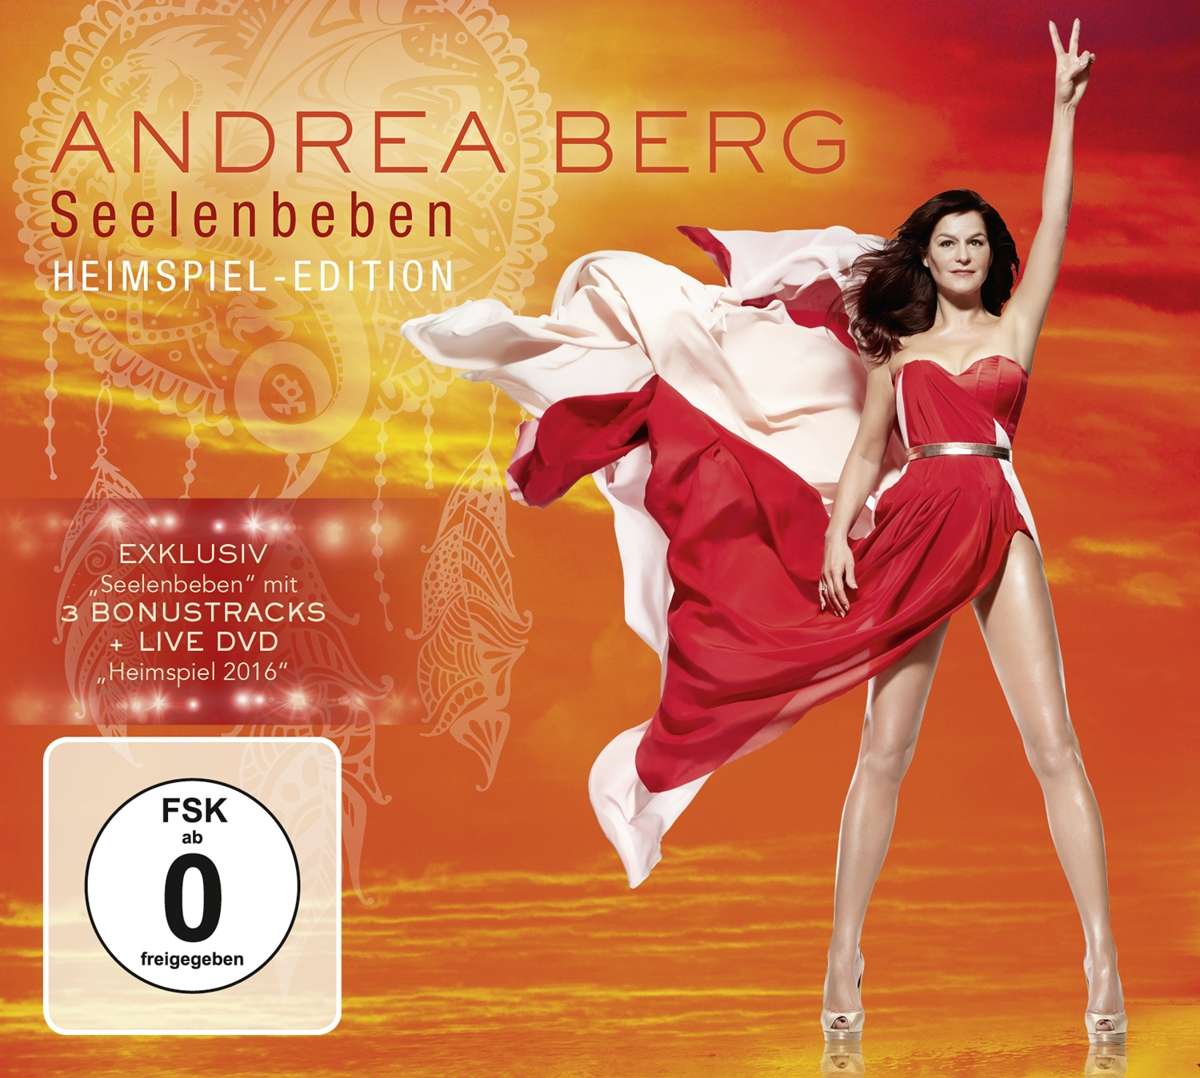 Andrea Berg Seelenbeben Heimspiel Edition 3 BonusTracks + Live DVD "Heimspiel 2016"